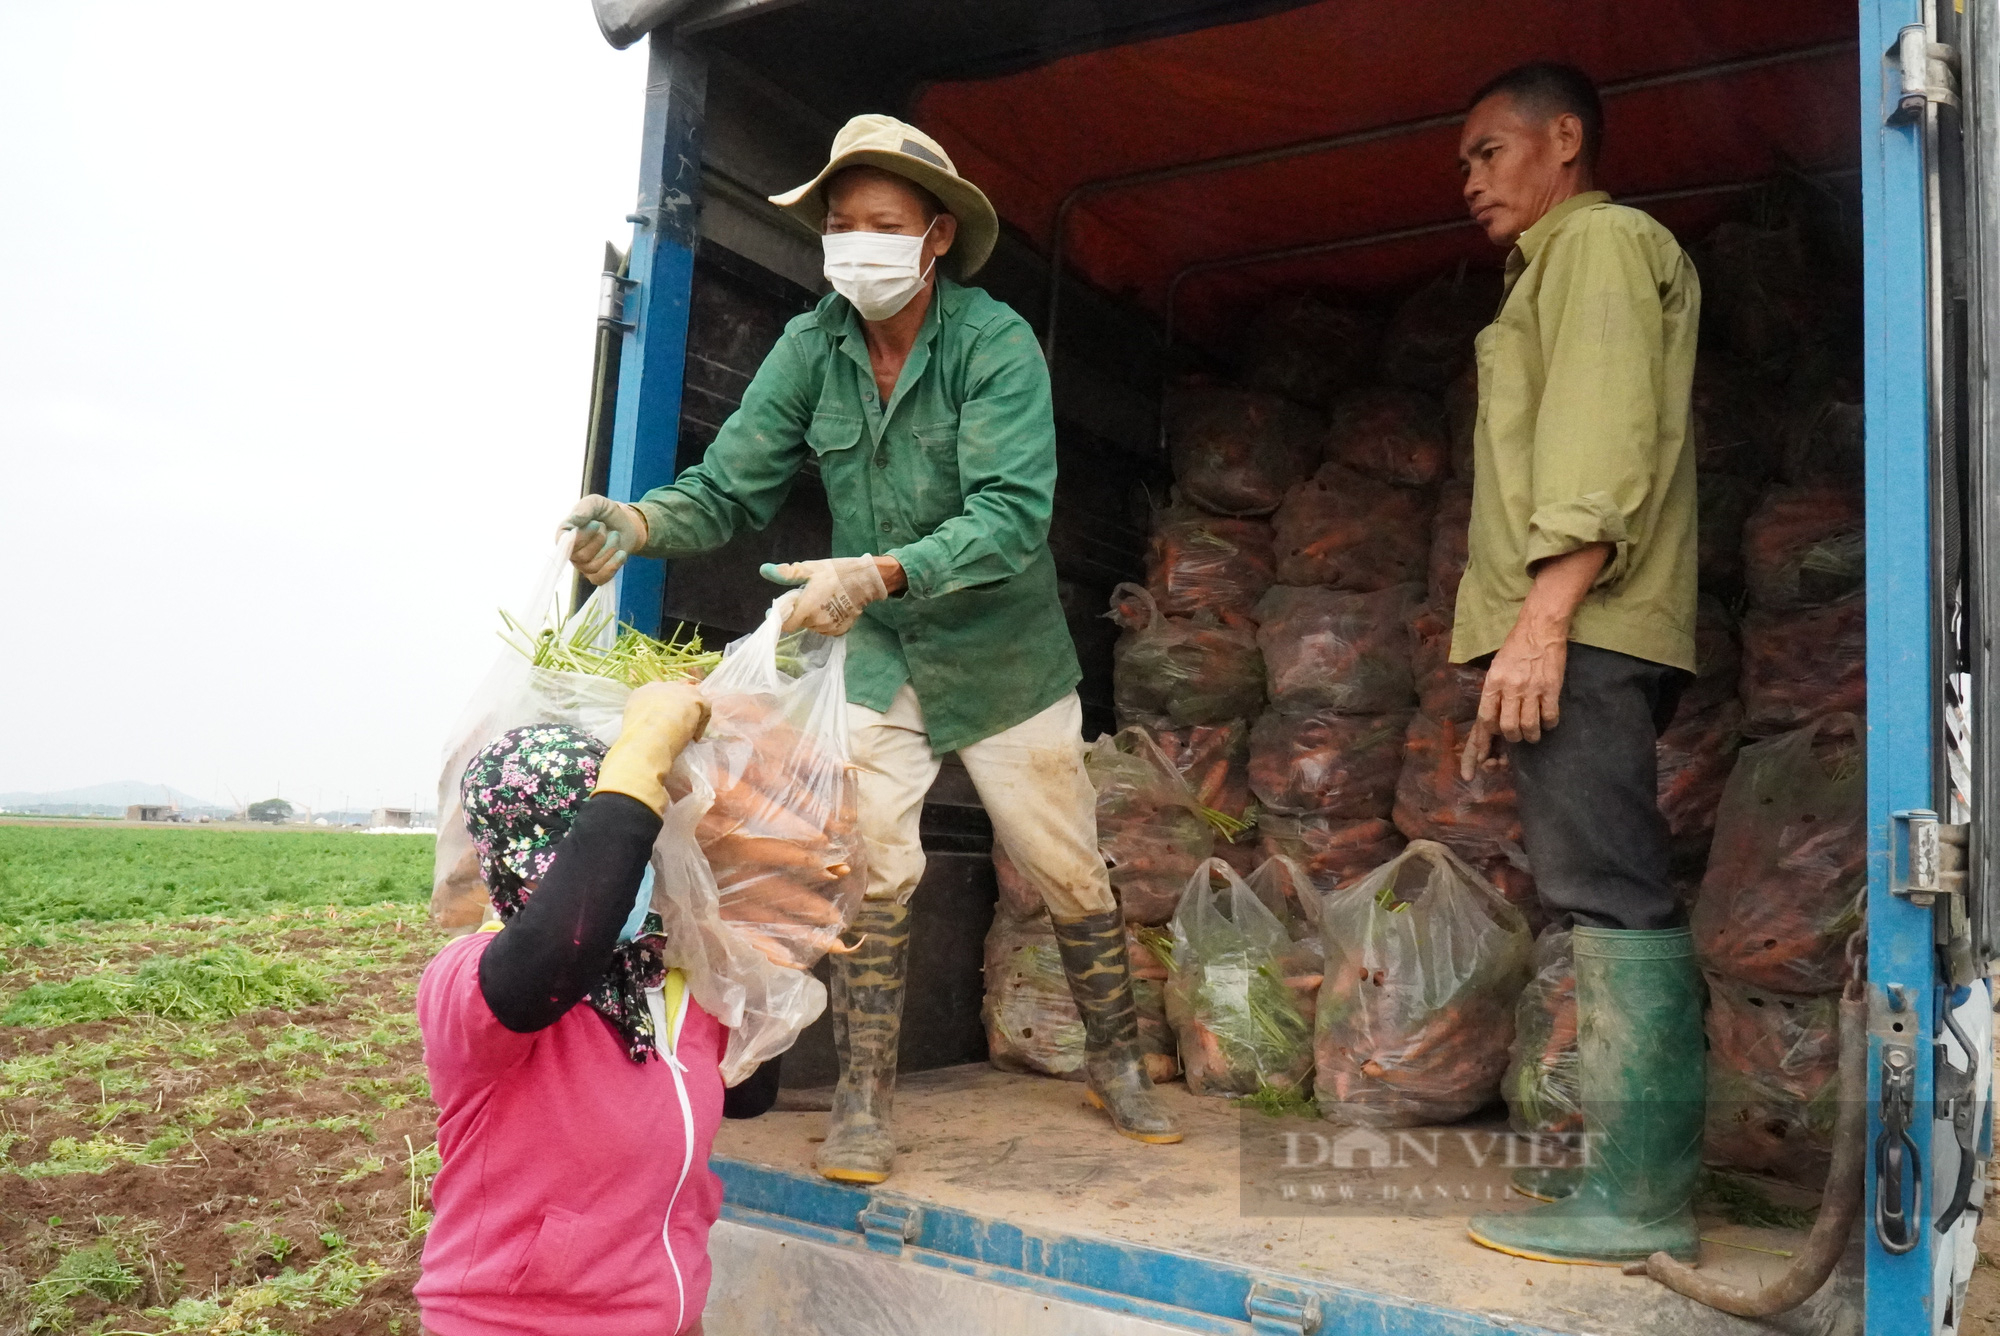 Nông dân trồng cà rốt ở Bắc Ninh trúng lớn, có nơi cho giá trị lên tới 500 triệu đồng/ha - Ảnh 5.